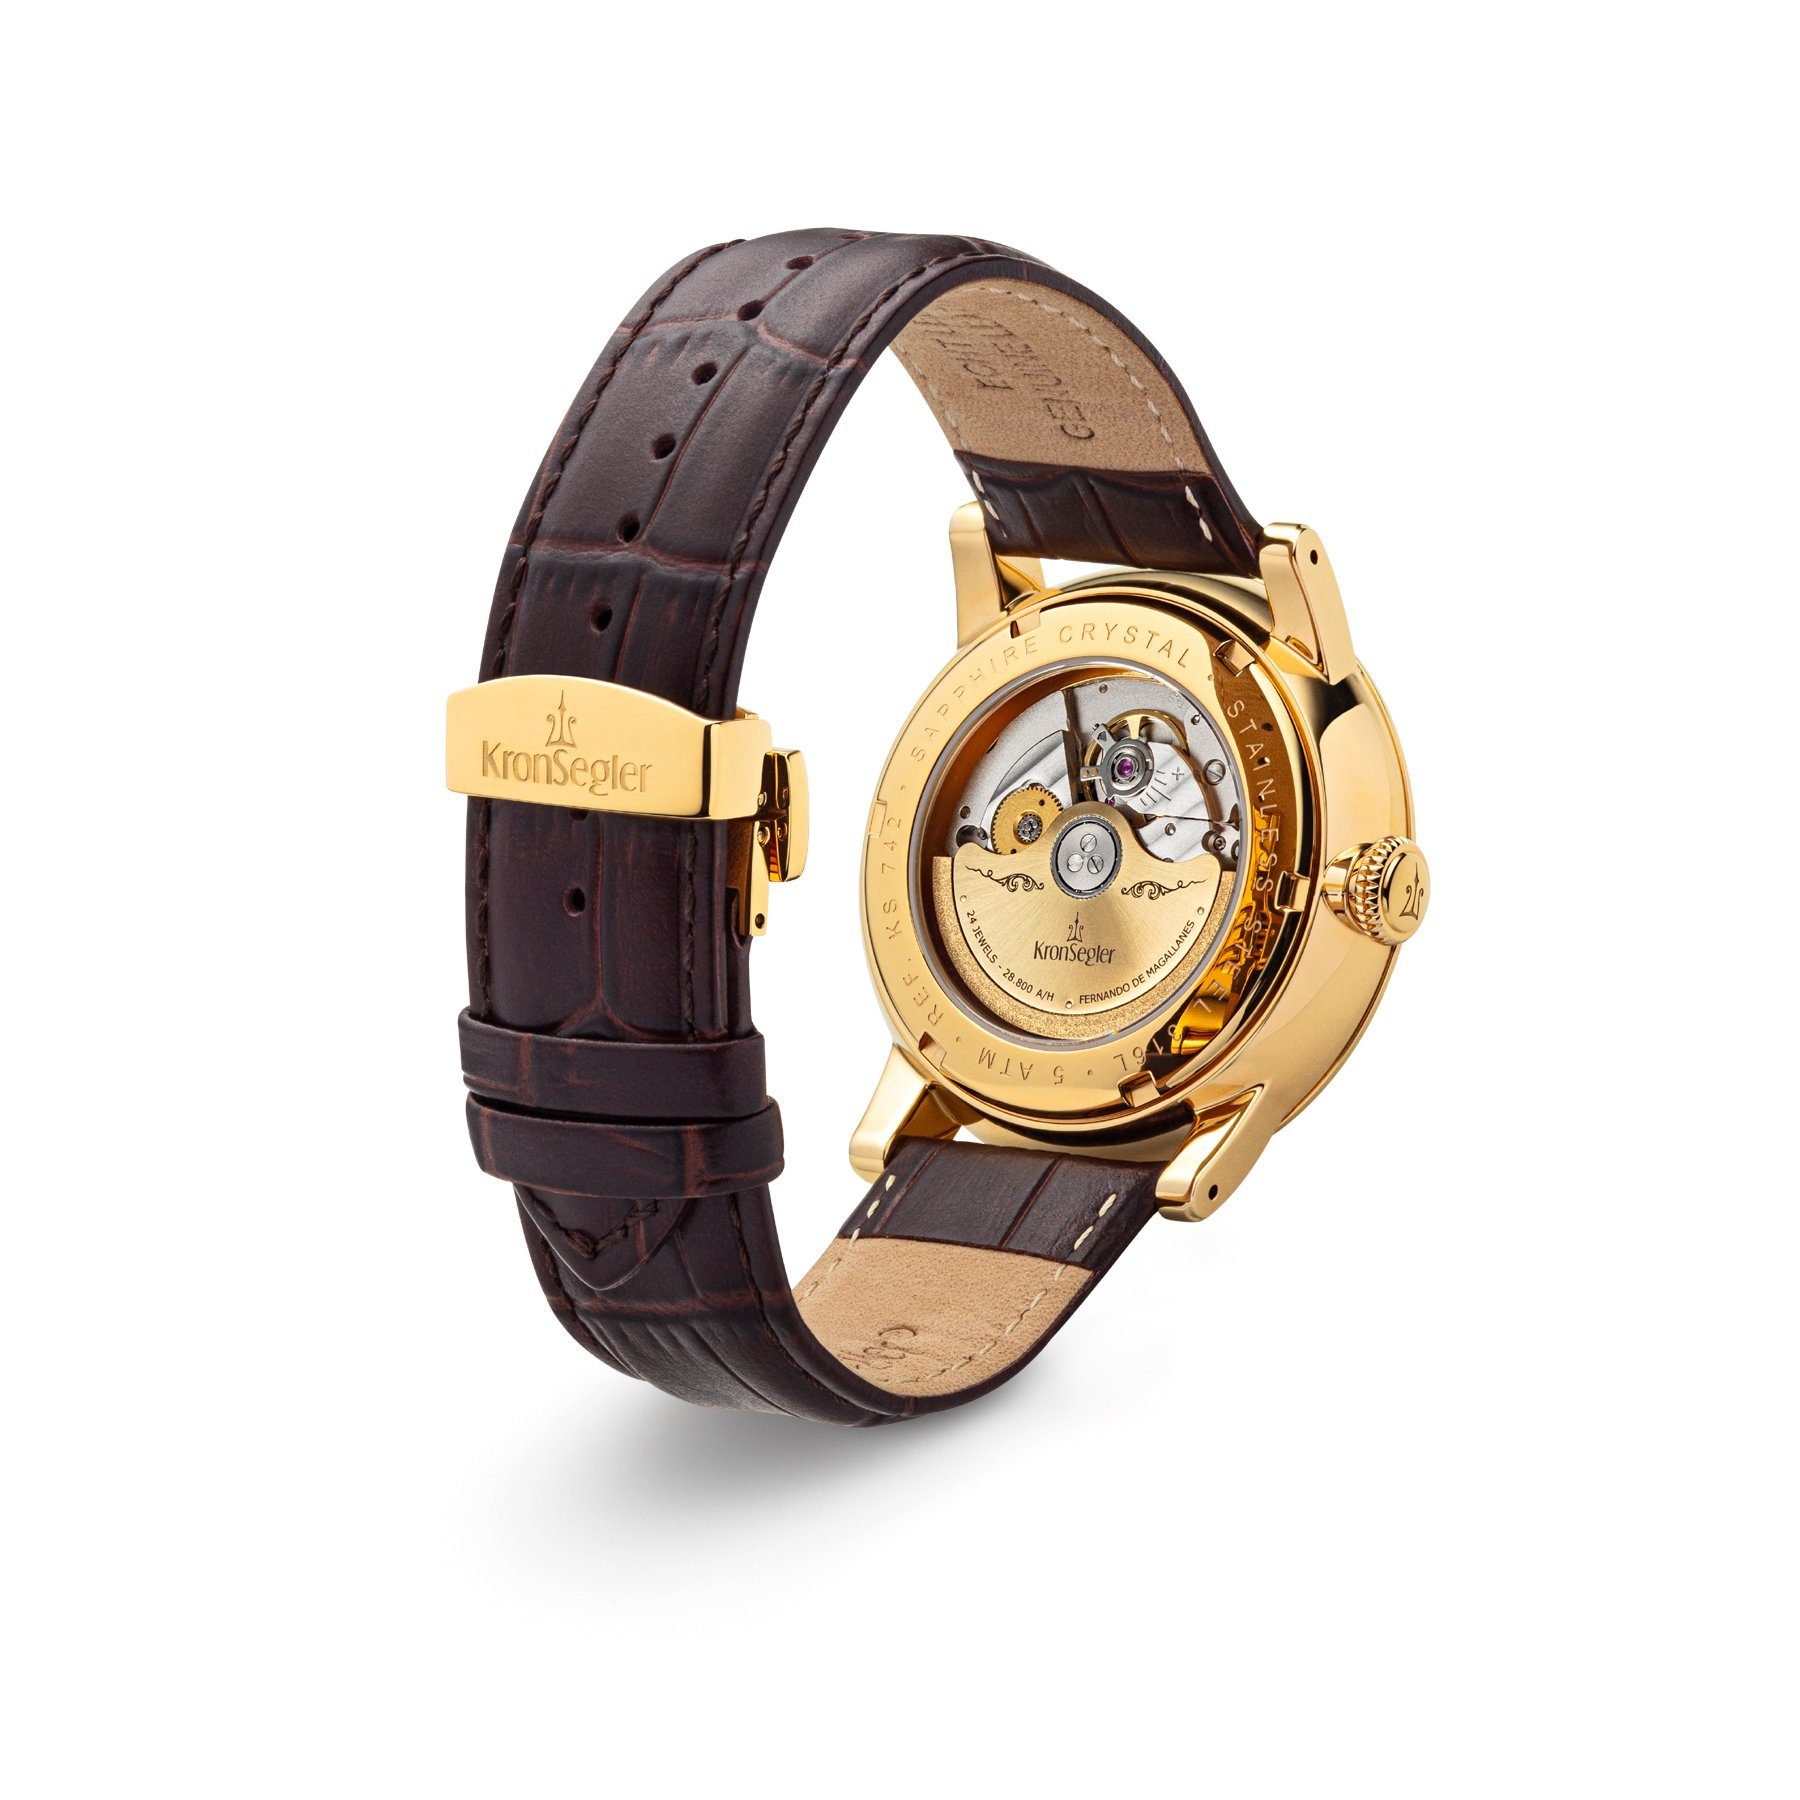 Kronsegler Automatikuhr "Fernando GMT Worldtimer m. Magallanes" de Armbanduhr gold-silberweiß/braun Lederband, mit Herren